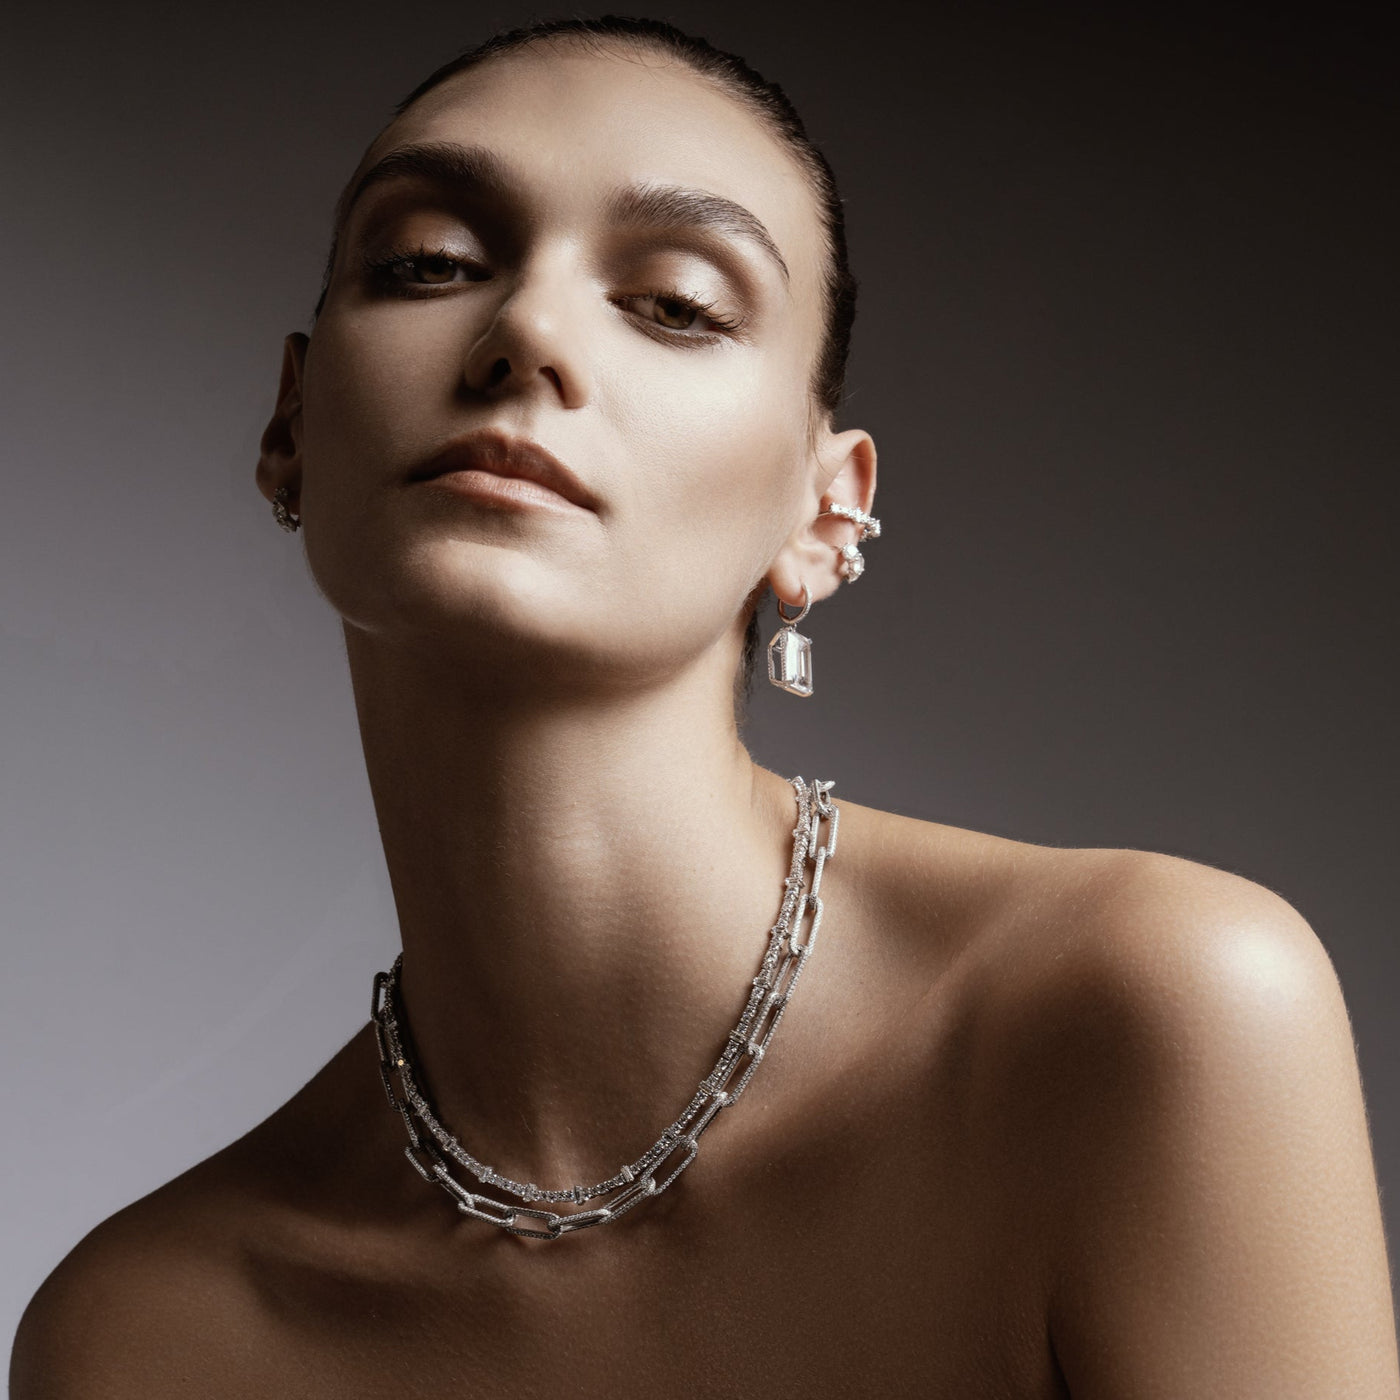 18k Seamless Oblong Pave Diamond Link Necklace - Ileana Makri